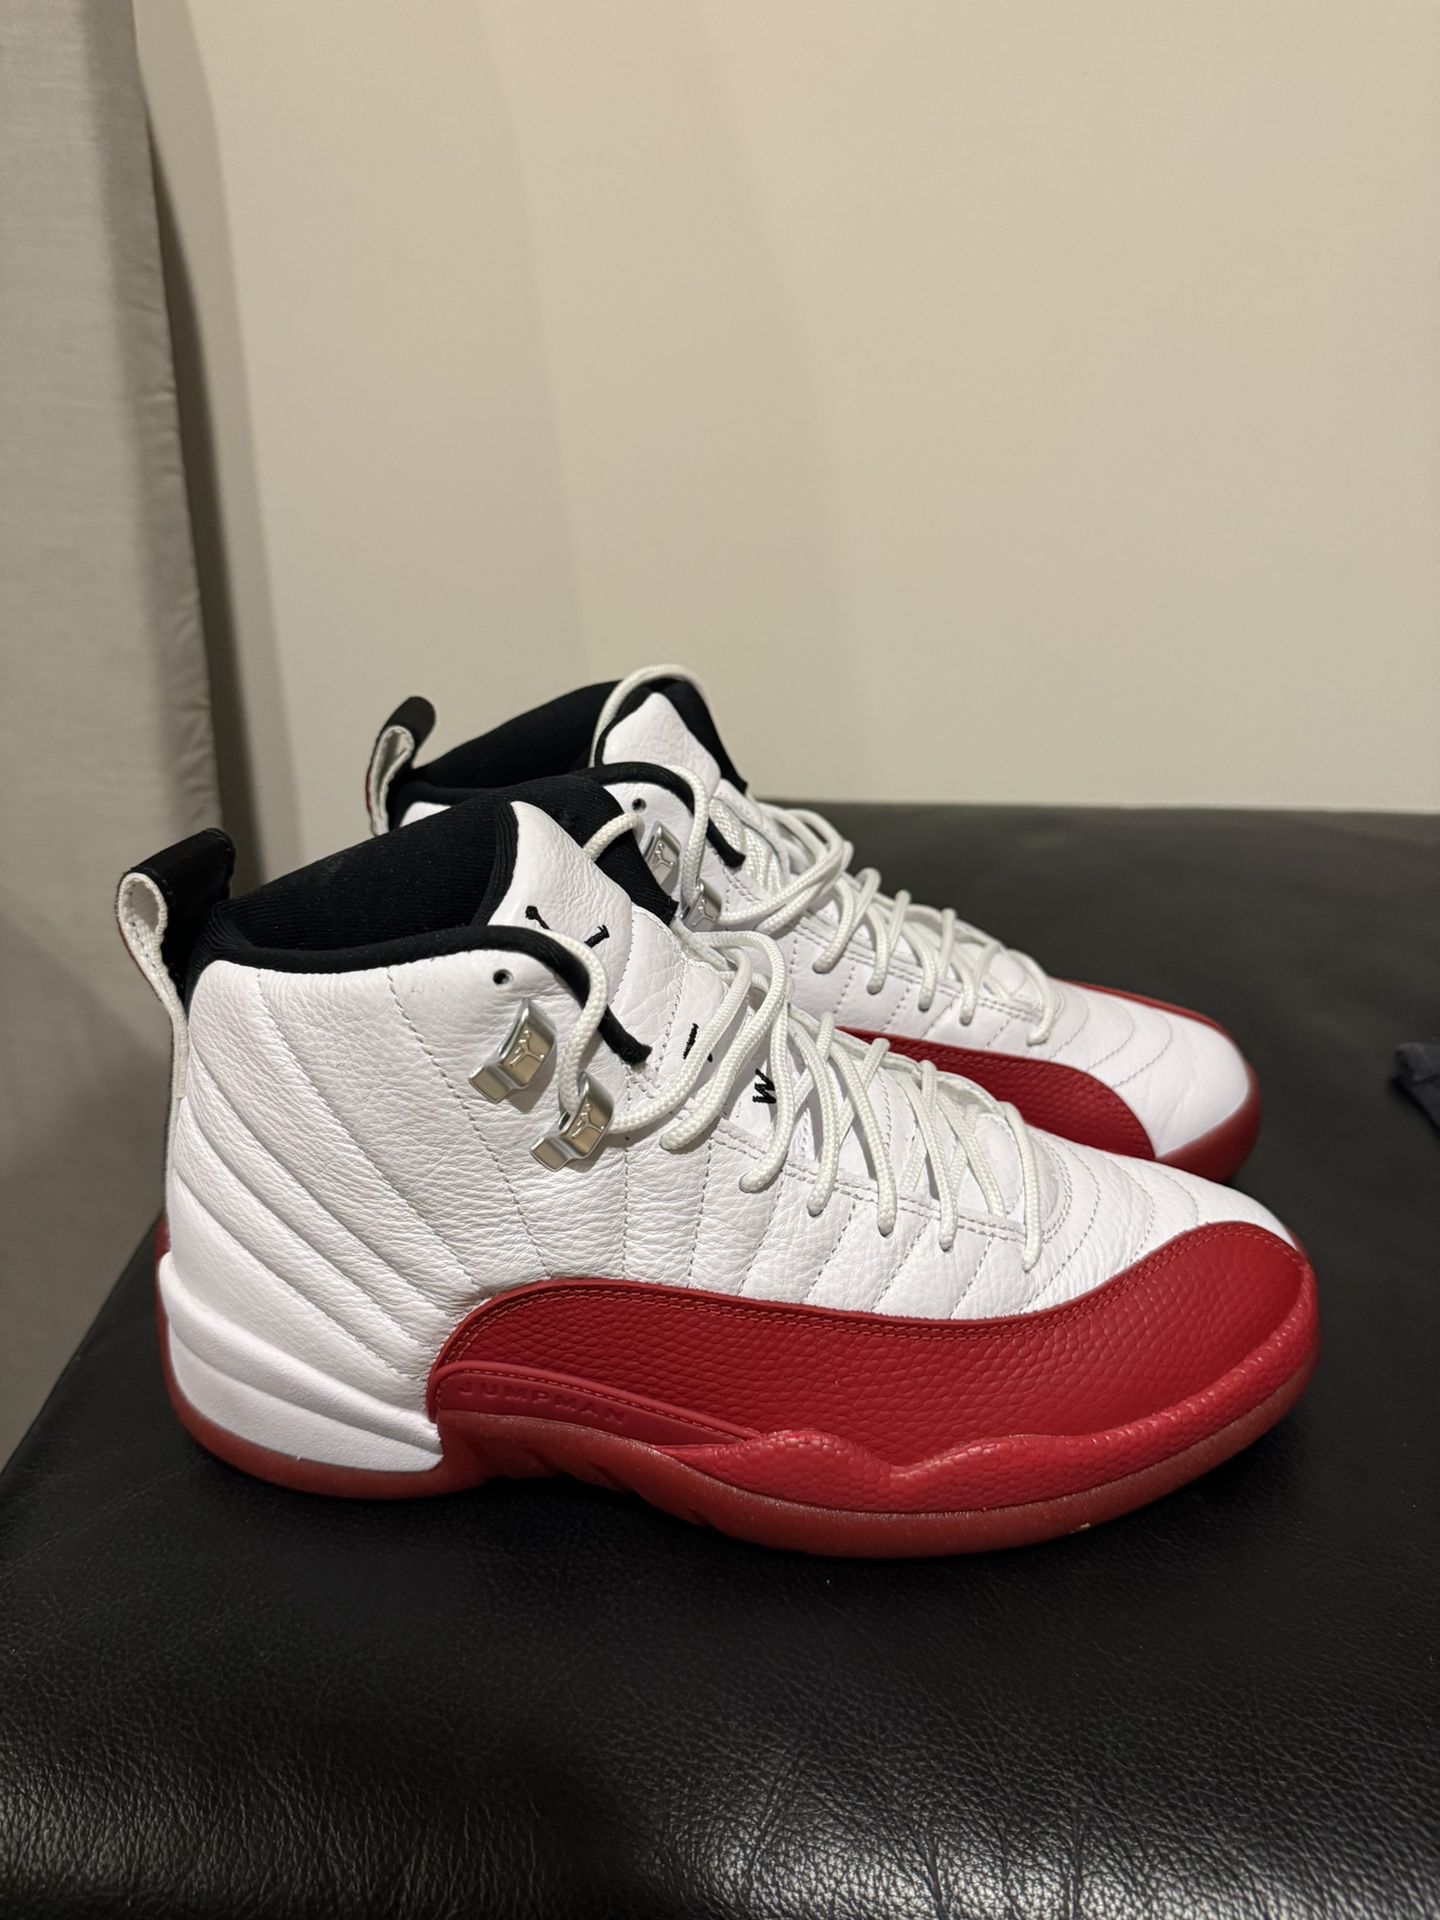 Jordan and Nike